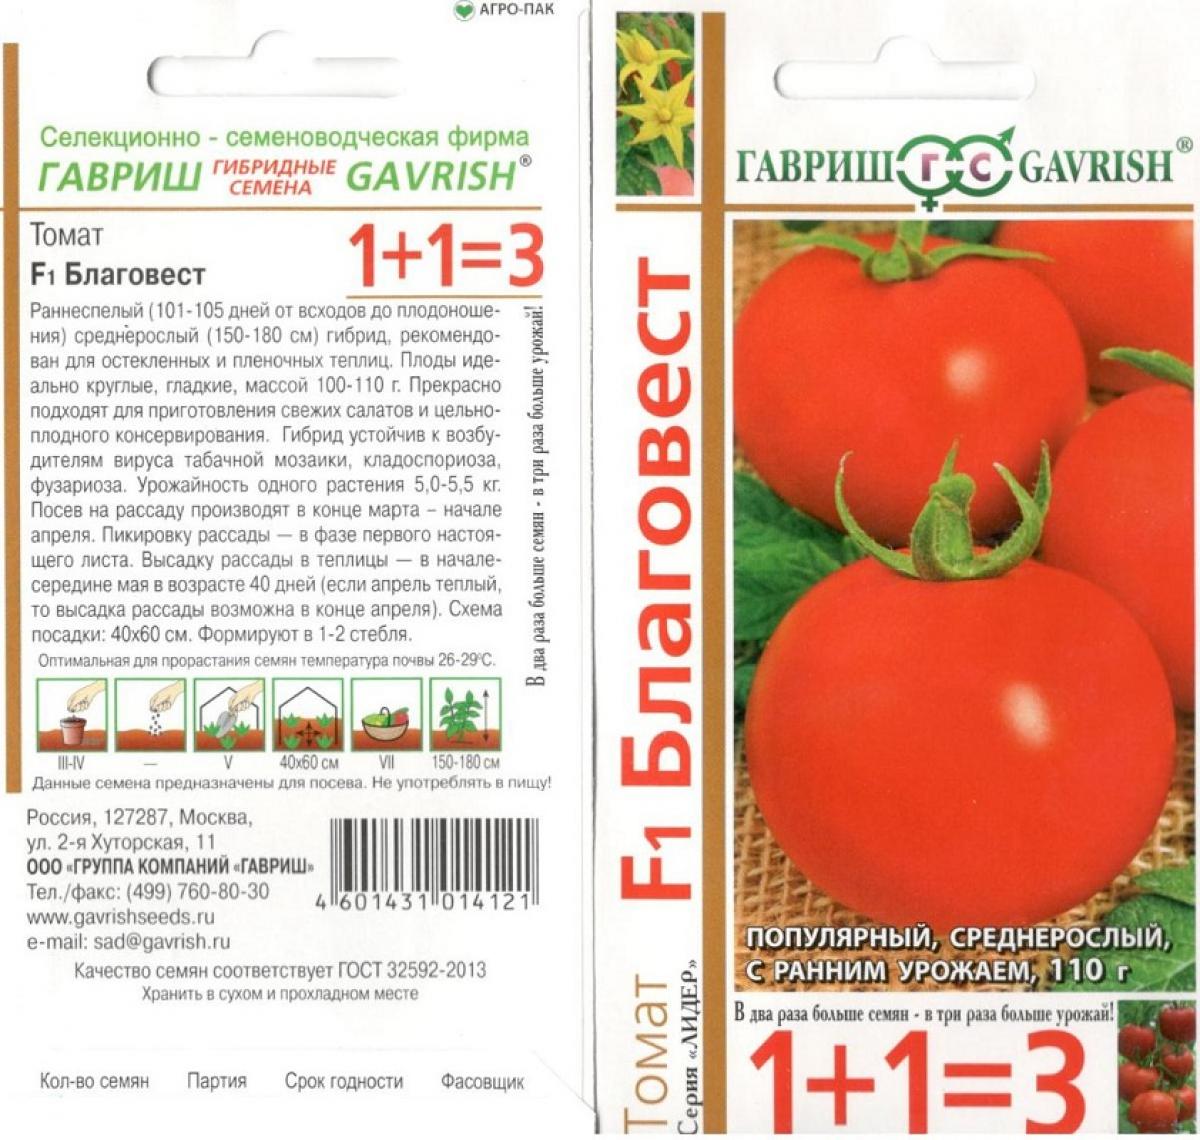 Коричневый сахар томаты позднеспелые оригинальные русский фермер